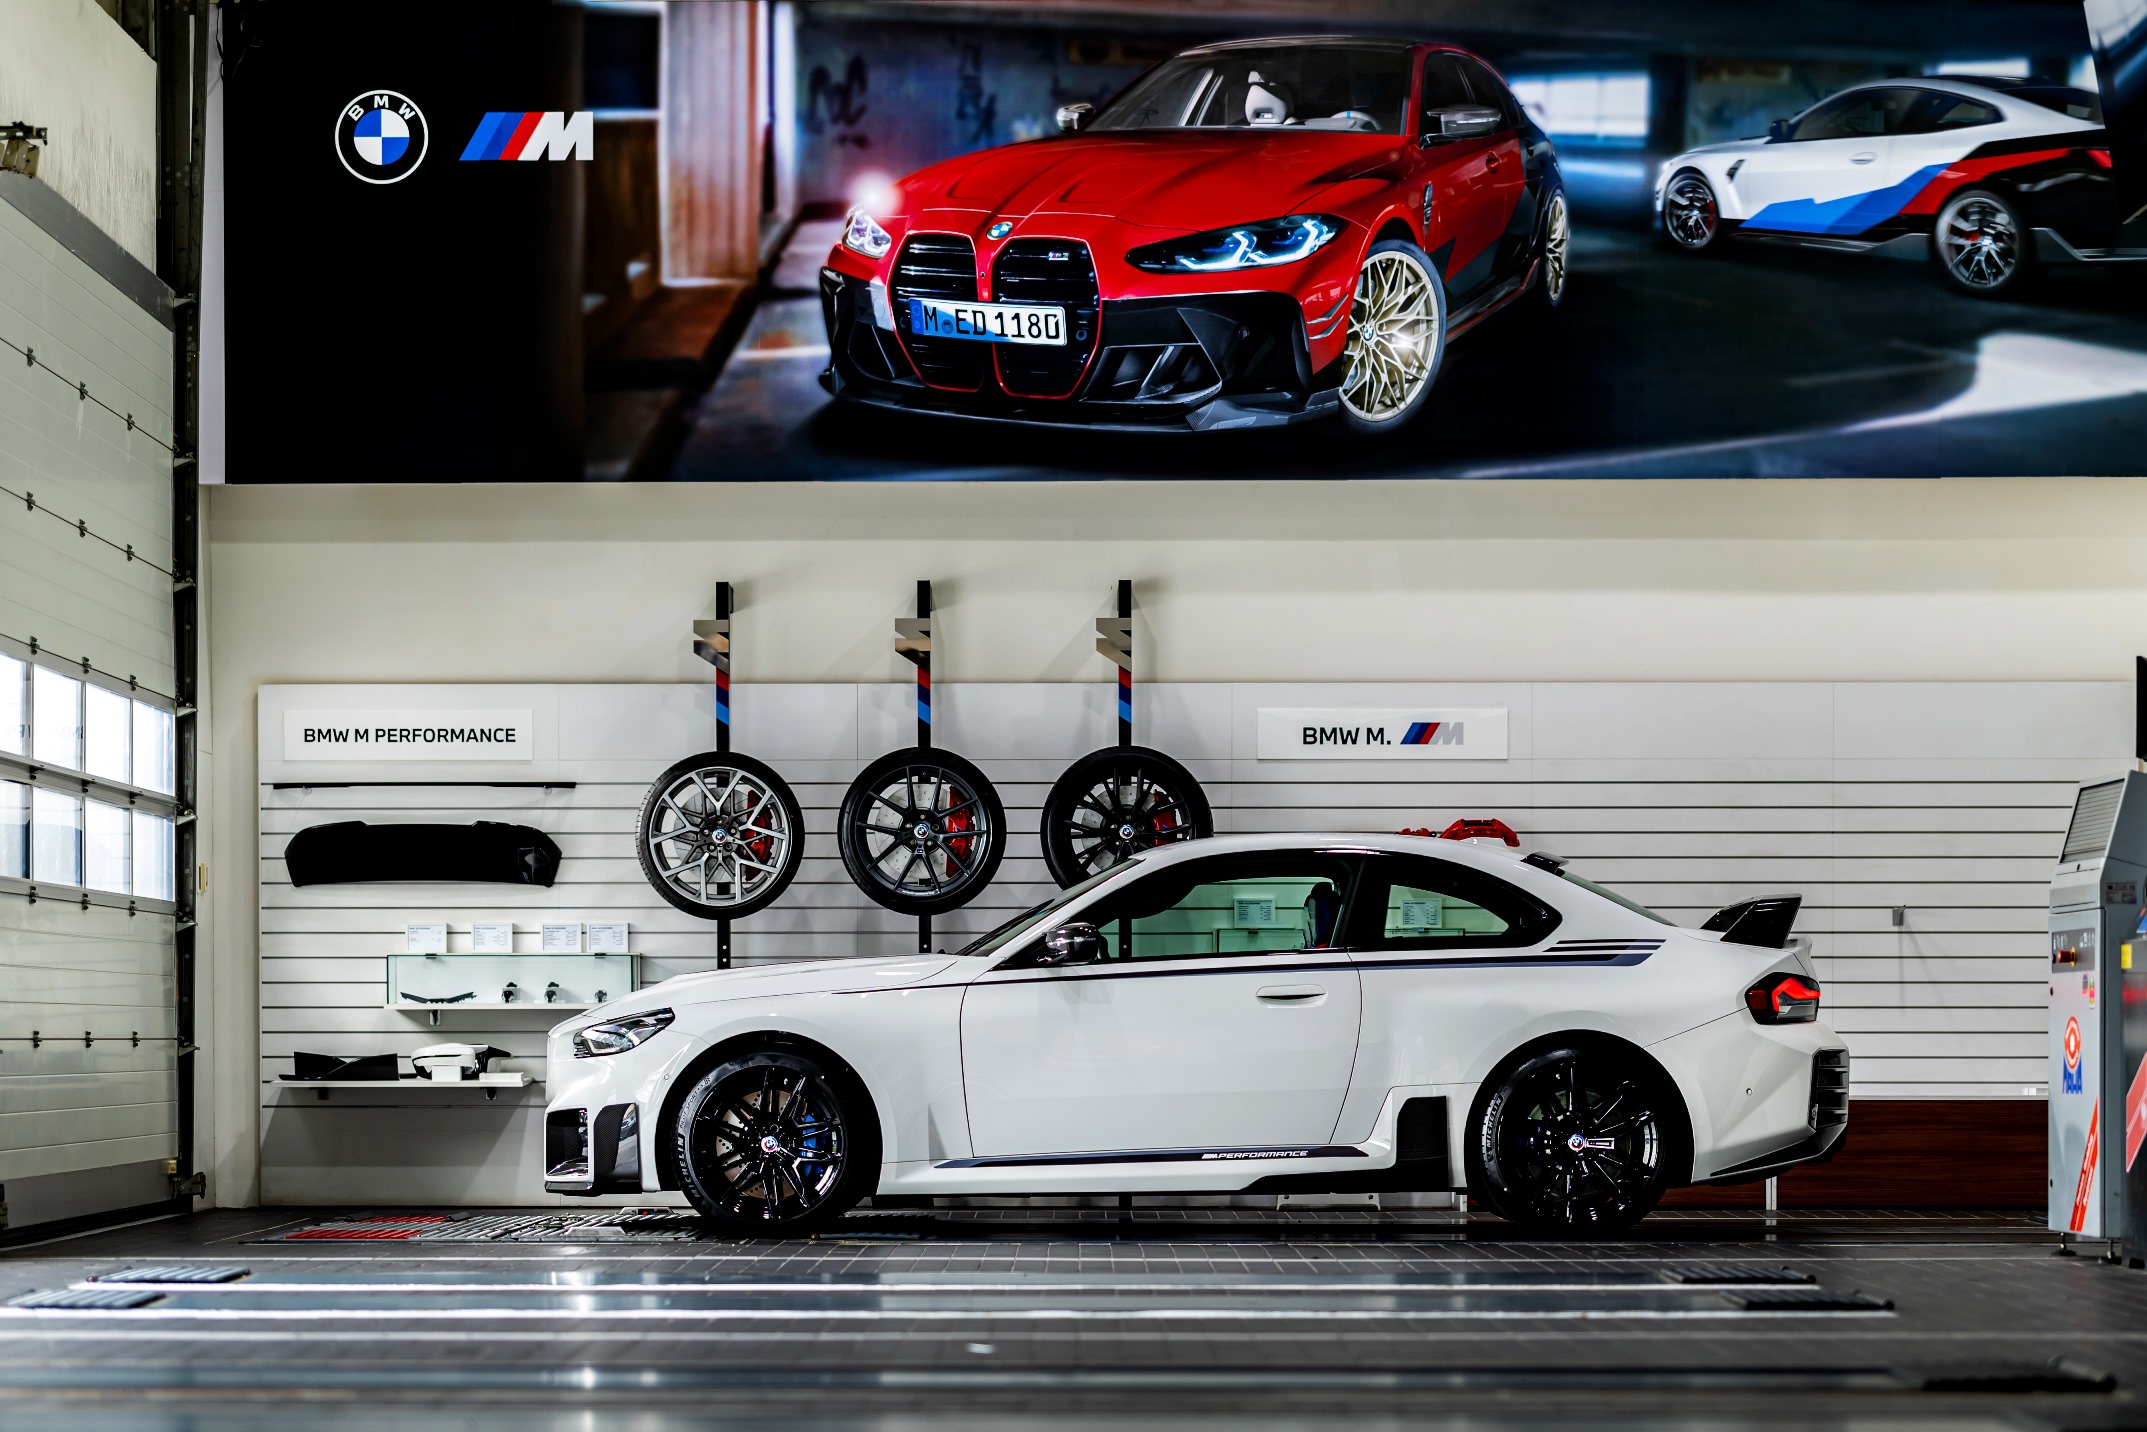 [新聞照片一]全新世代BMW M2 Coupé專屬BMW M Performance套件 硬派再升級.jpg